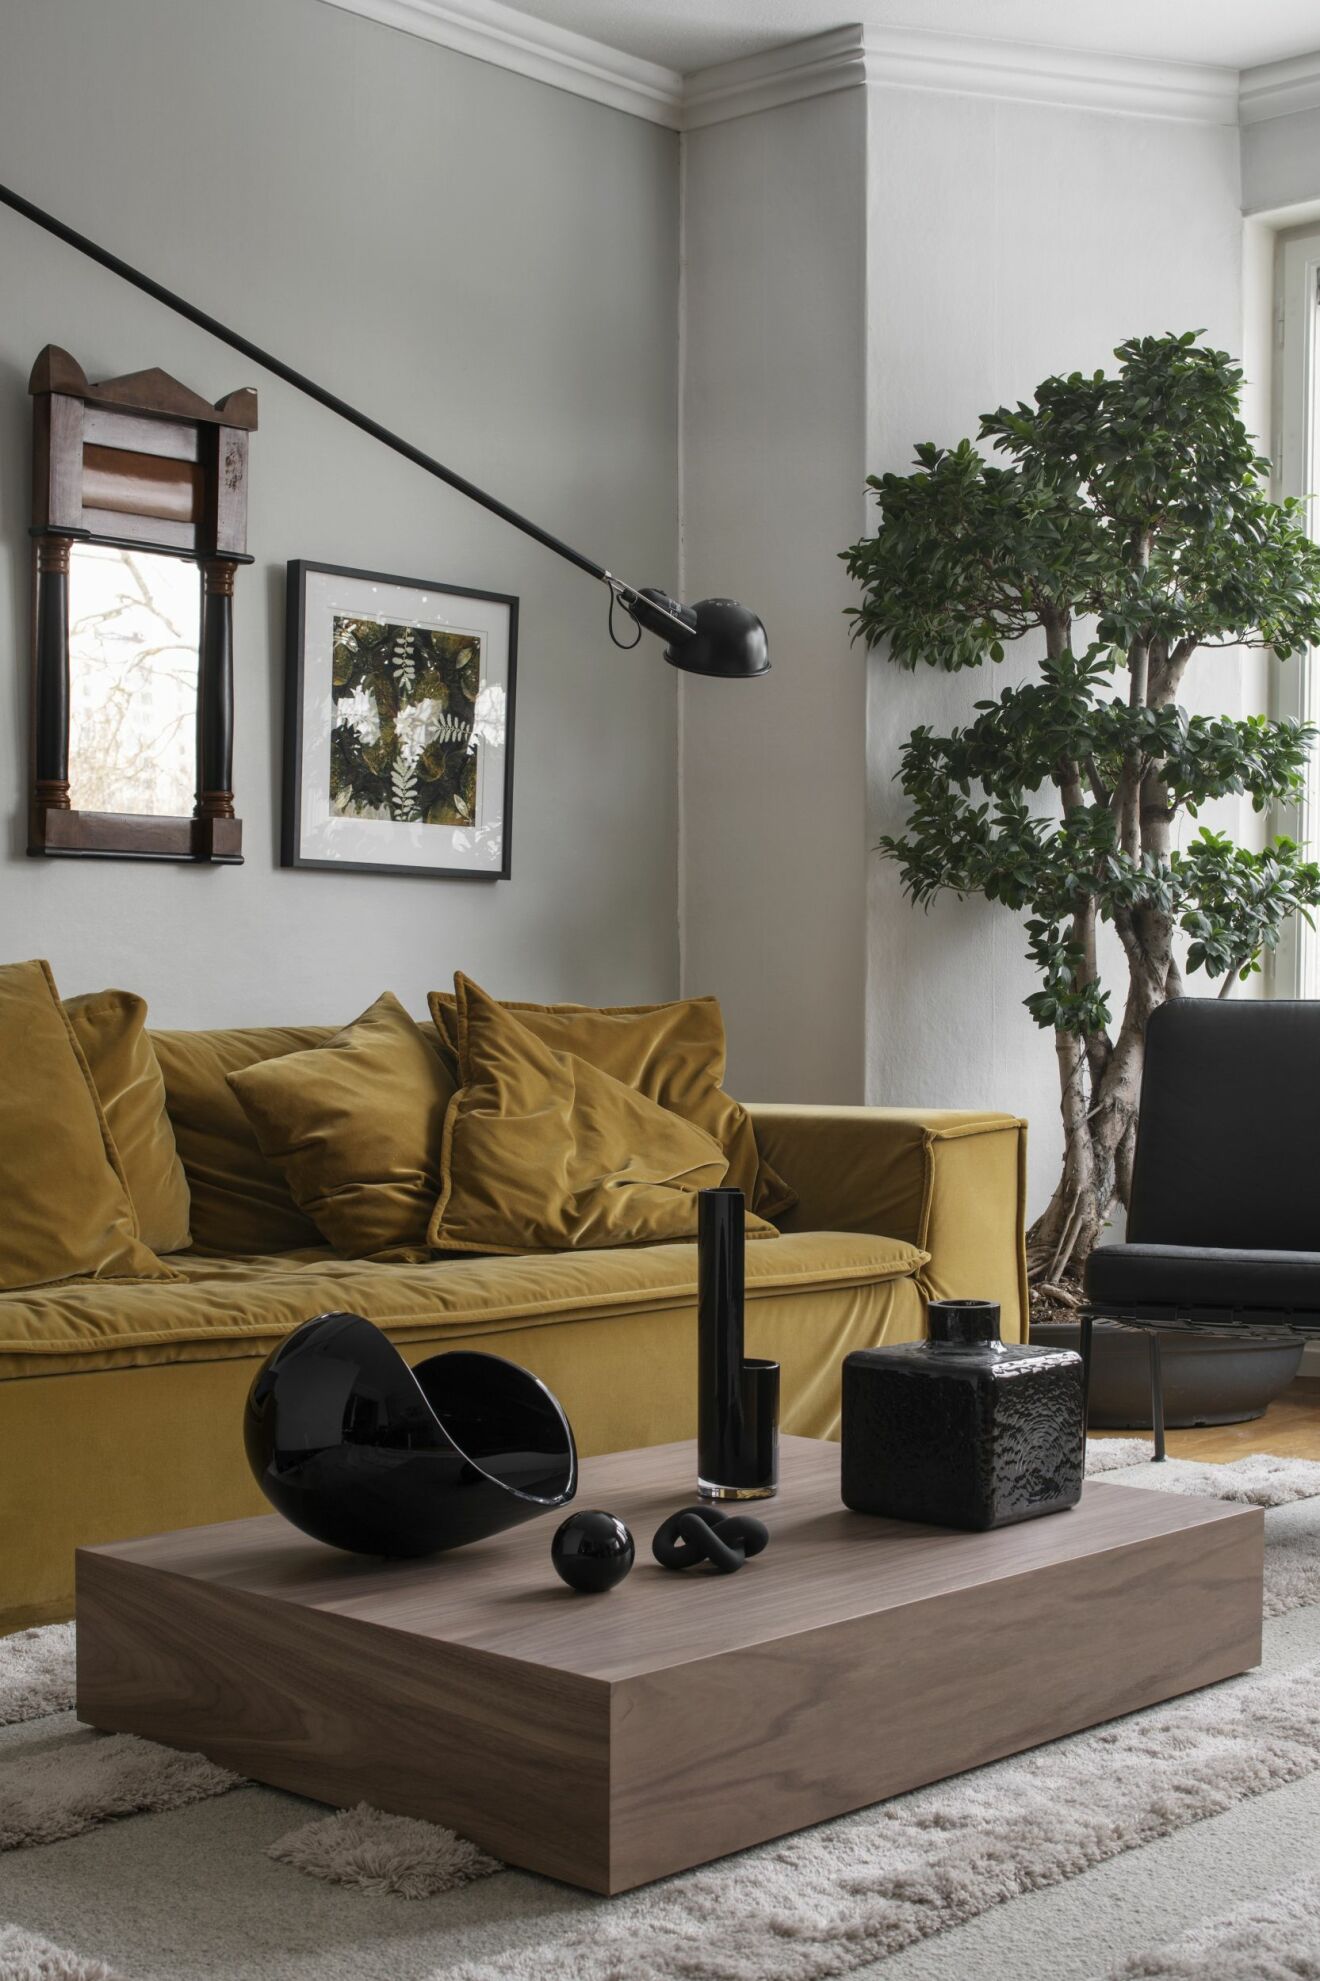 Vardagsrumm med gul soffa från Meli Meli och framför soffan ett lågt soffbord från Lim + Lu.